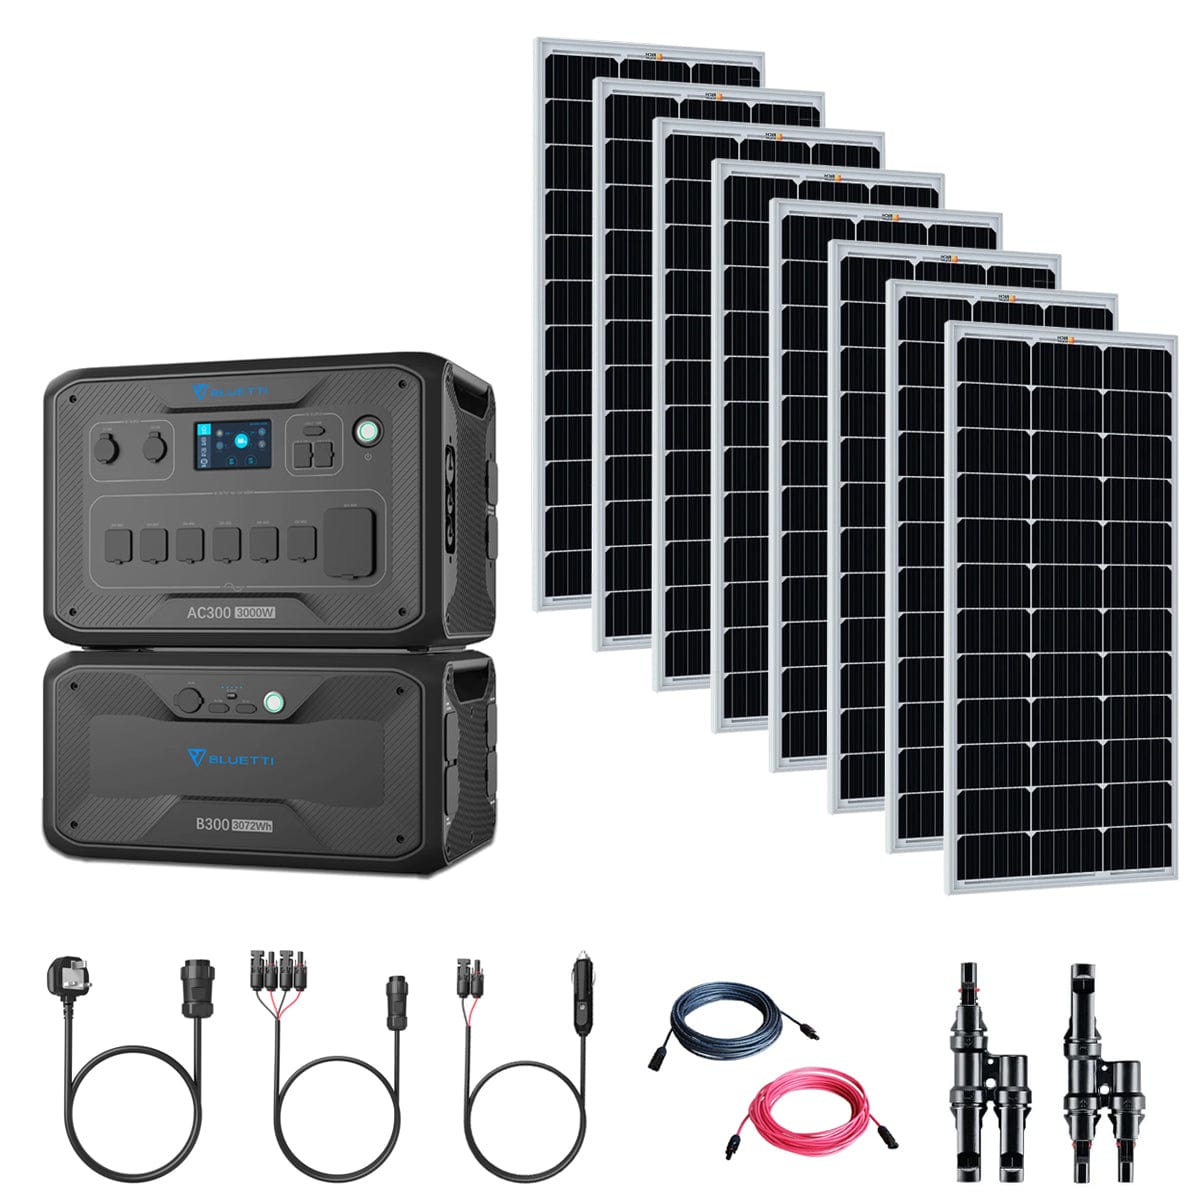 Bluetti AC300 3,000W/3,072Wh Solar Generator Kit | 8 x Mono Solar Panels (100W or 200W) | 1 x B300 3,072Wh Battery | Complete Solar Kit Bluetti AC300 Kits AC300